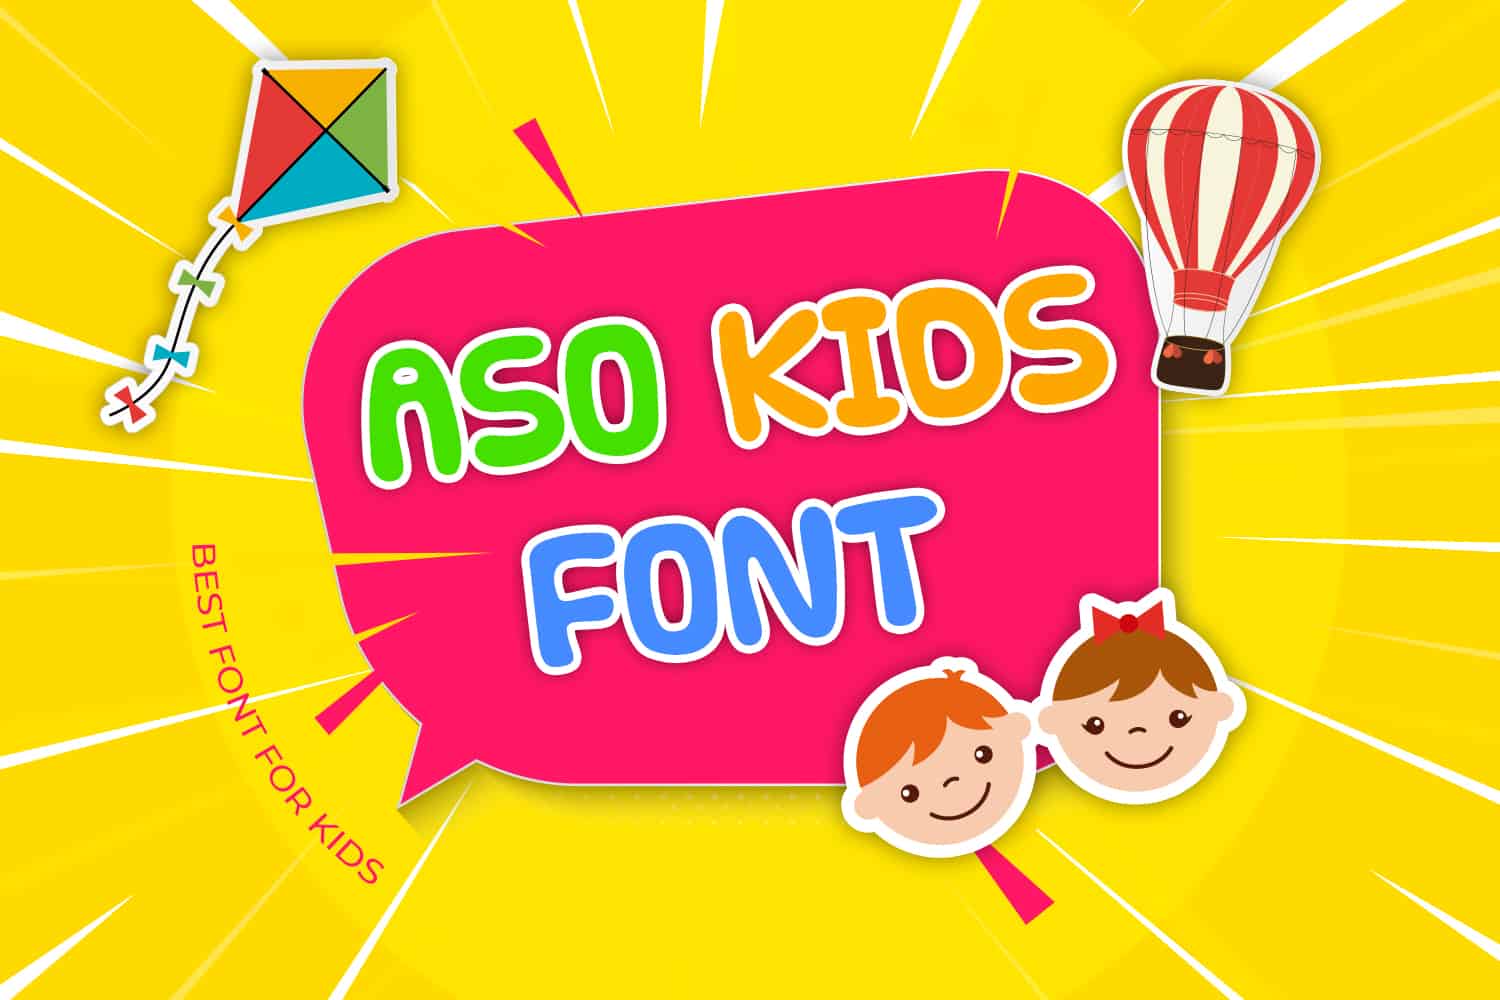 Aso Kids Font